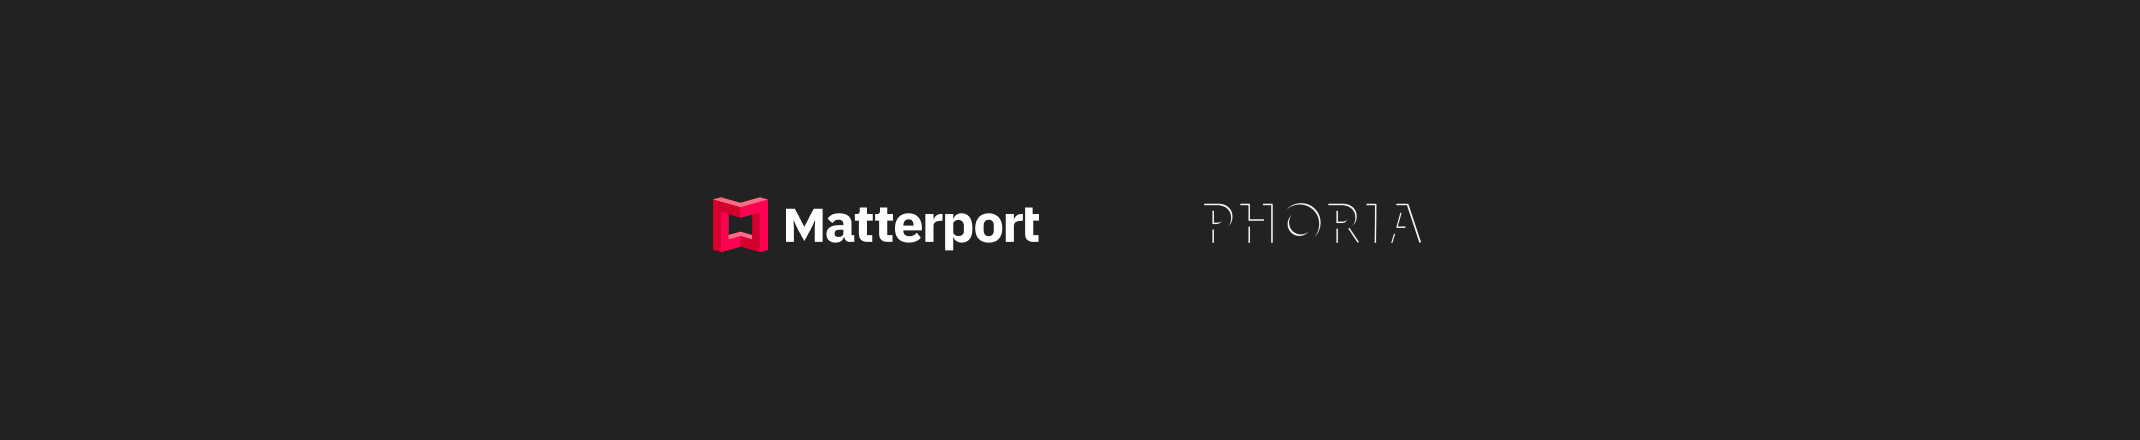 Matterport and Phoria Logos